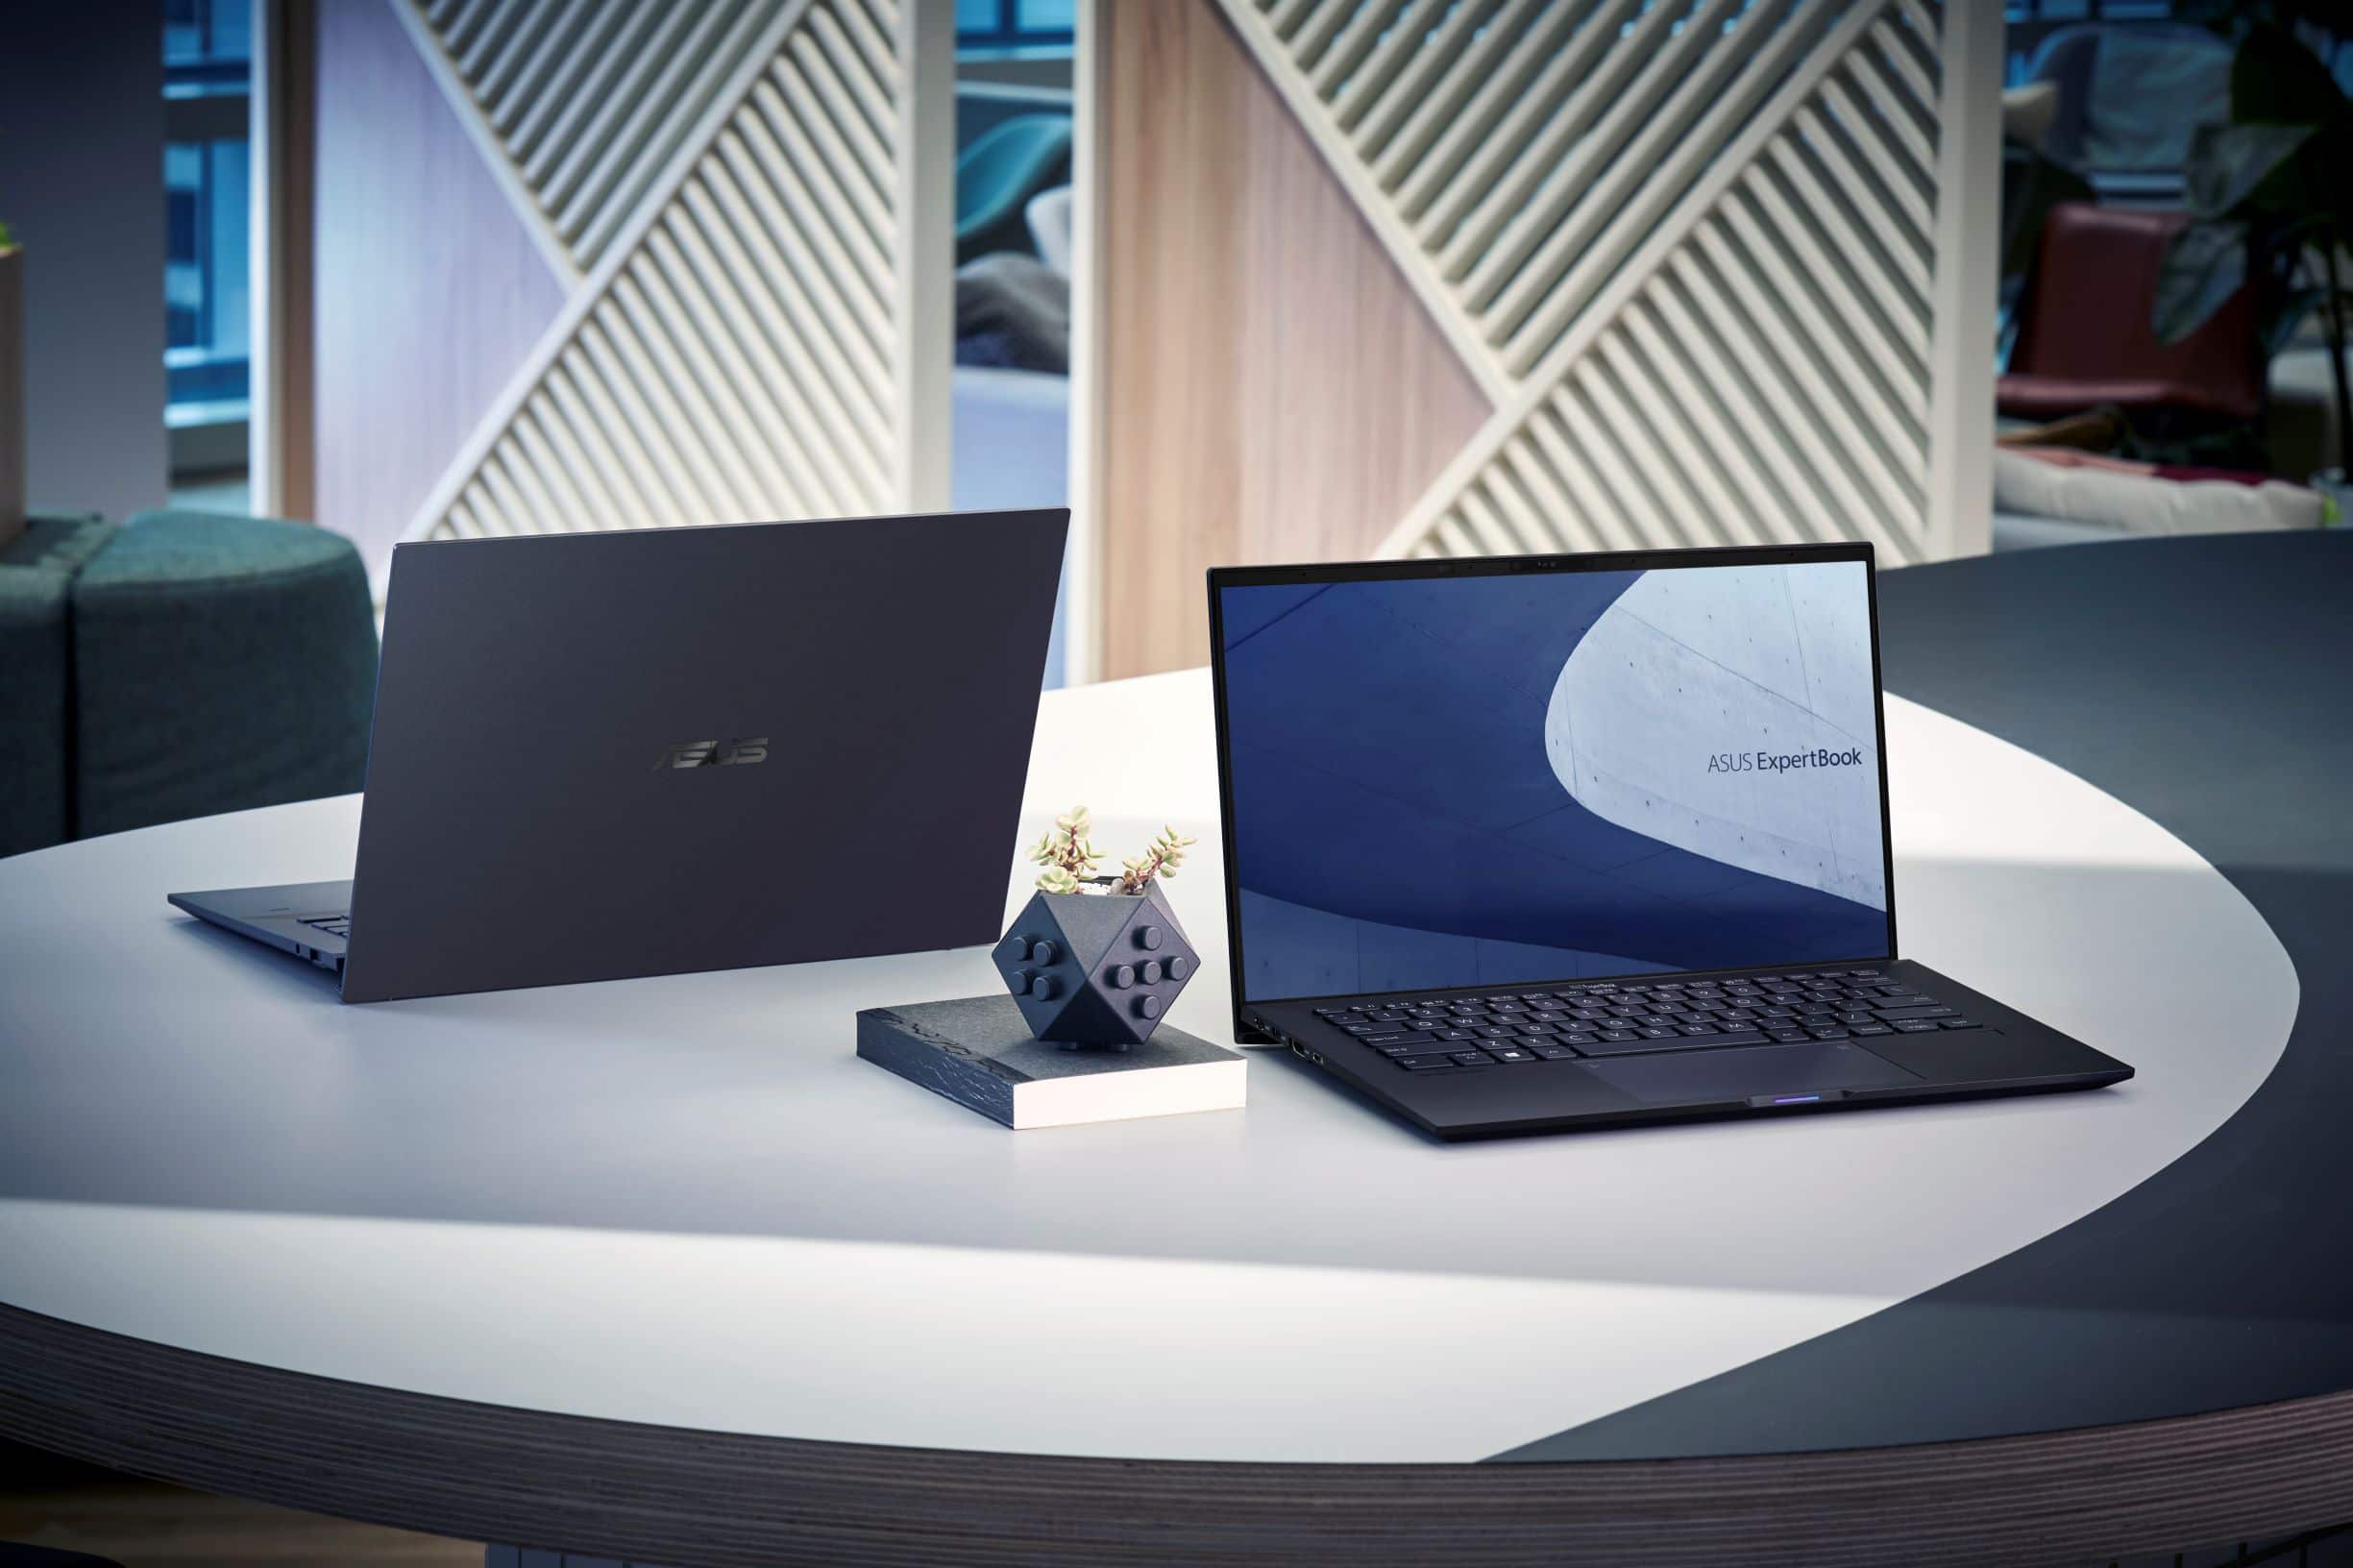 ASUS giới thiệu loạt sản phẩm laptop trang bị vi xử lí Intel Core thế hệ 11, đạt chuẩn Intel Evo